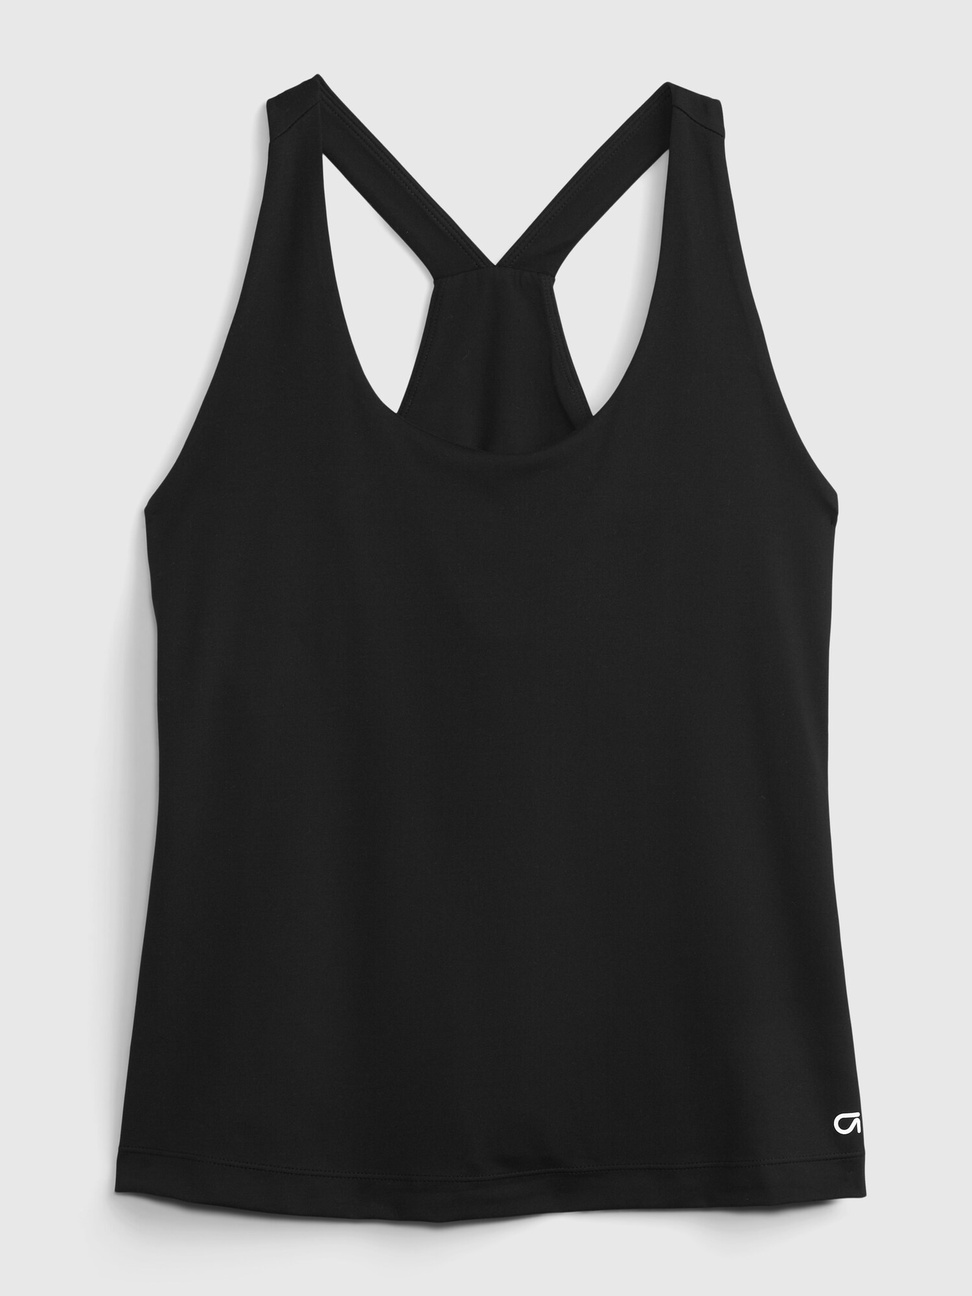 女裝|素色緊身透氣運動背心 Gap Fit運動系列-黑色